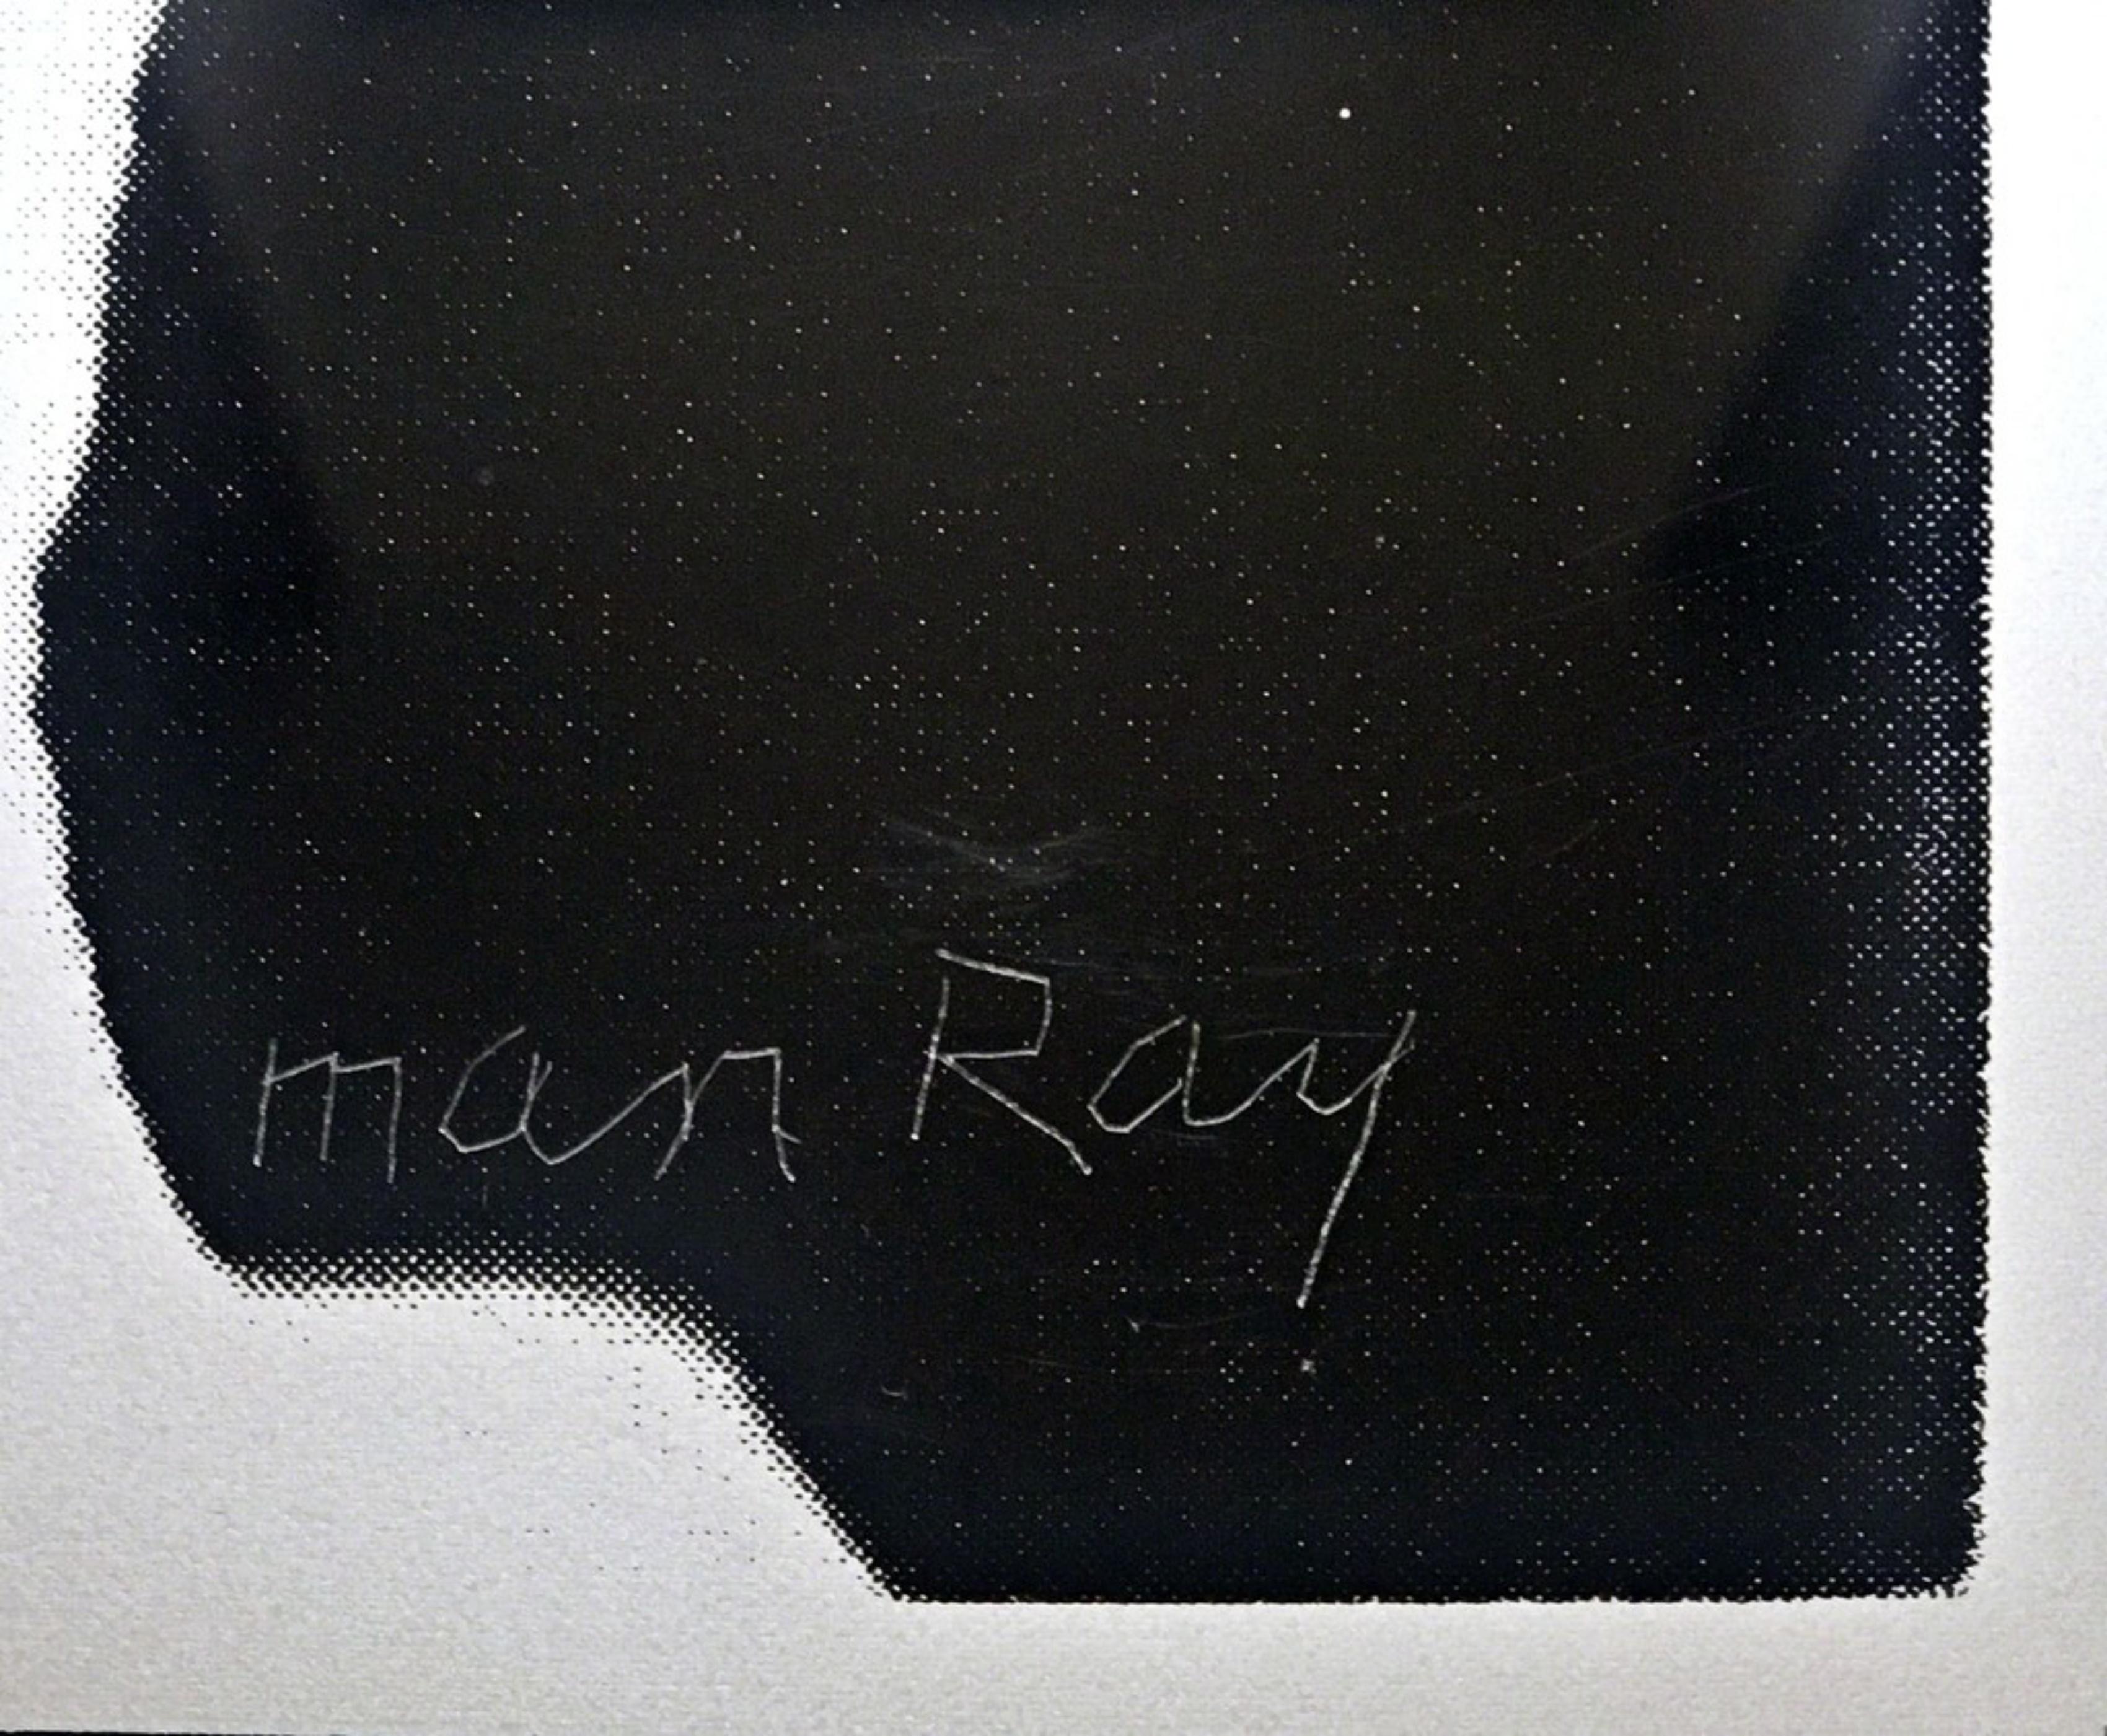 MAN RAY
Deux mains, 1966
Technique mixte : Sérigraphie sur plexiglas
Publié par Gemini GEL 
Mesures :
Image : 20 